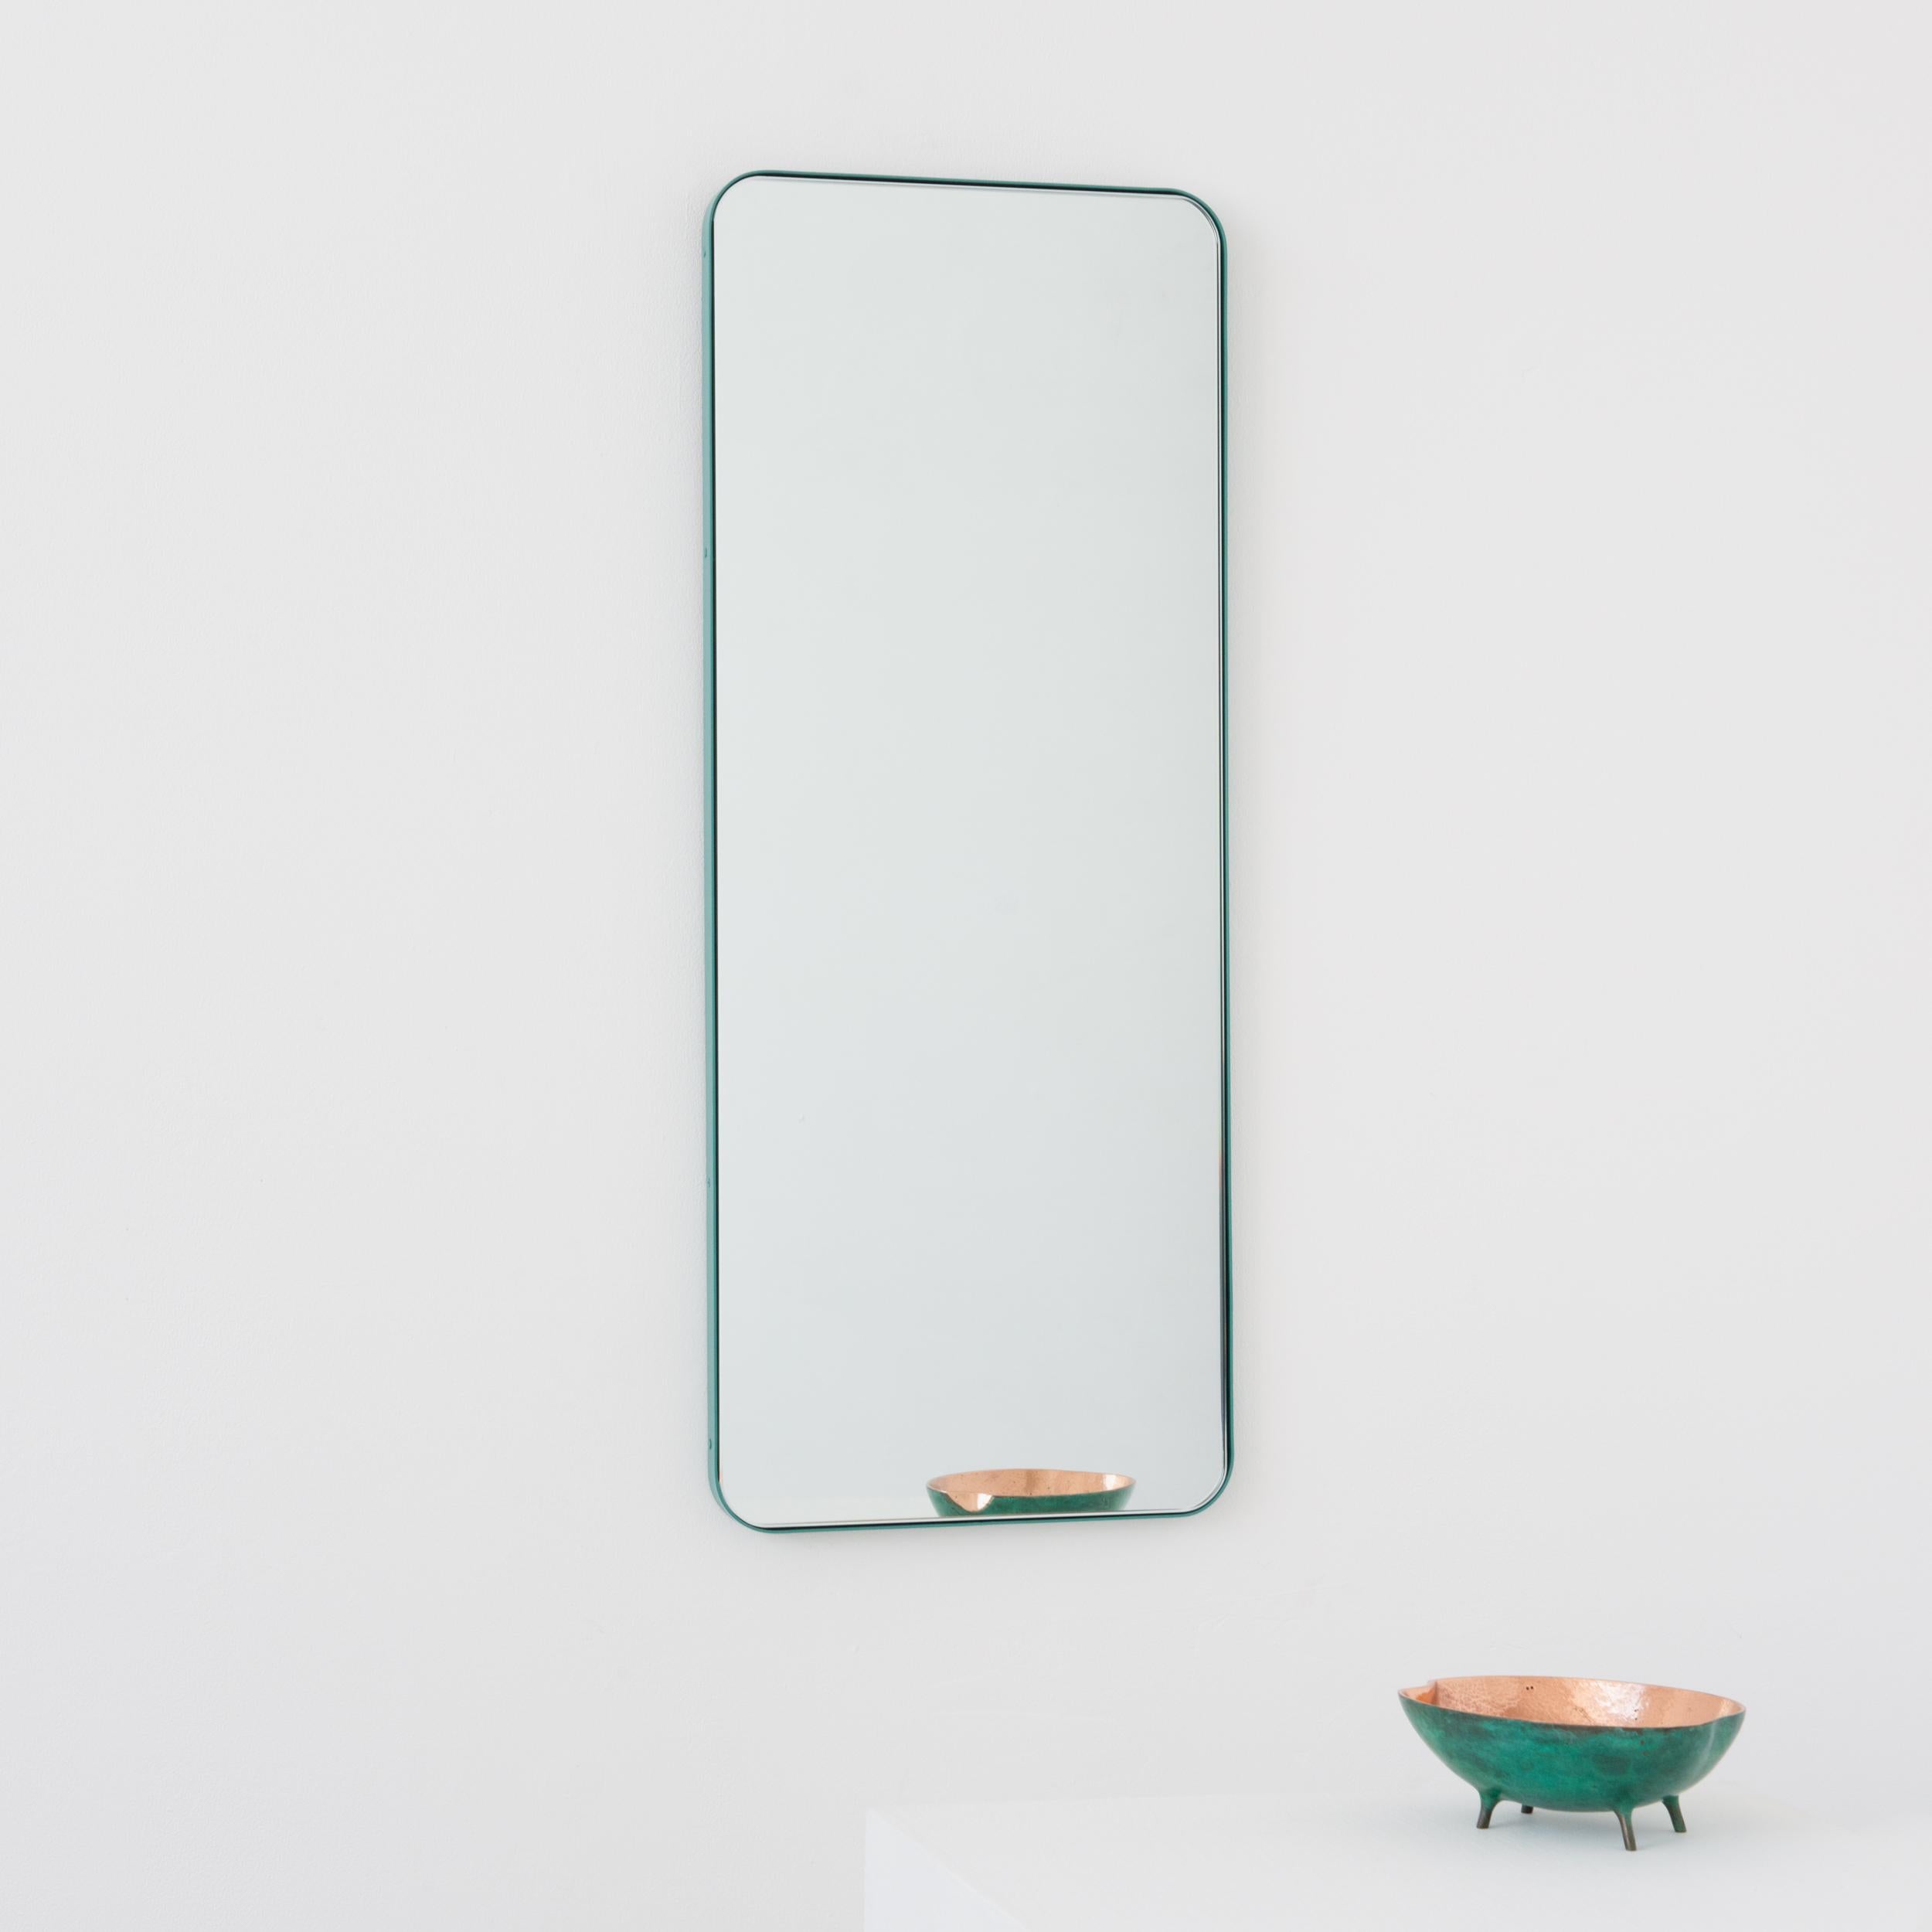 Miroir rectangulaire moderne avec un cadre turquoise menthe en aluminium peint par poudrage. Une partie de la charmante collection Quadris™, conçue et fabriquée à la main à Londres, au Royaume-Uni. 

Fourni avec une barre en z spécialisée pour une